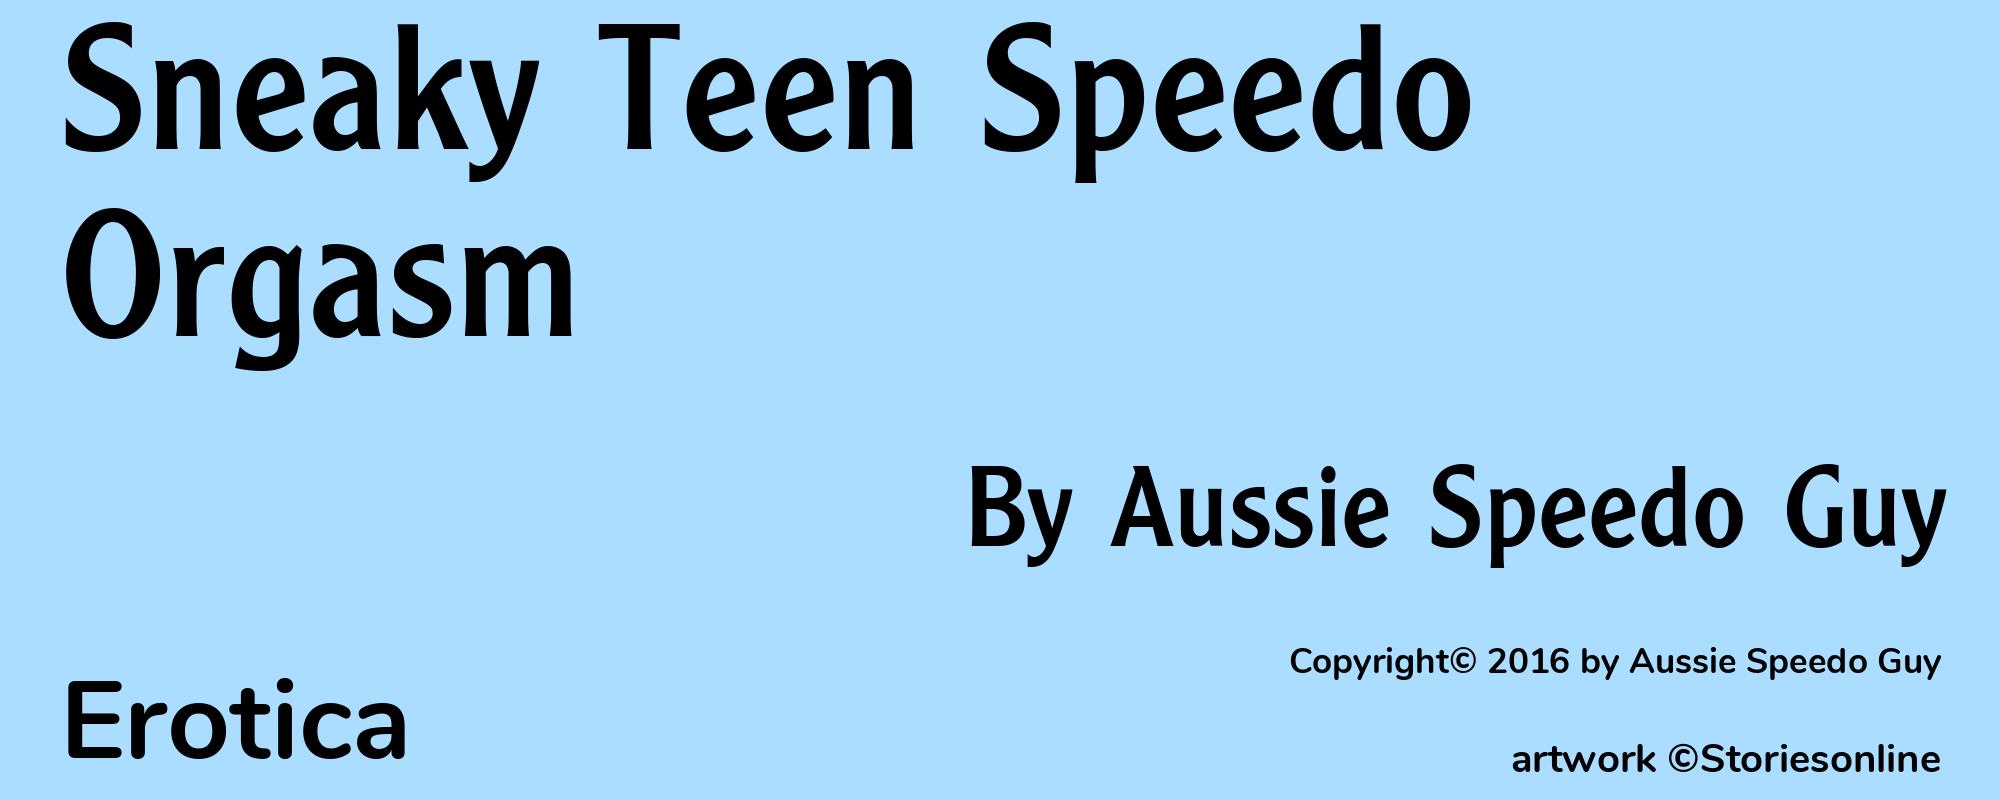 Sneaky Teen Speedo Orgasm - Cover